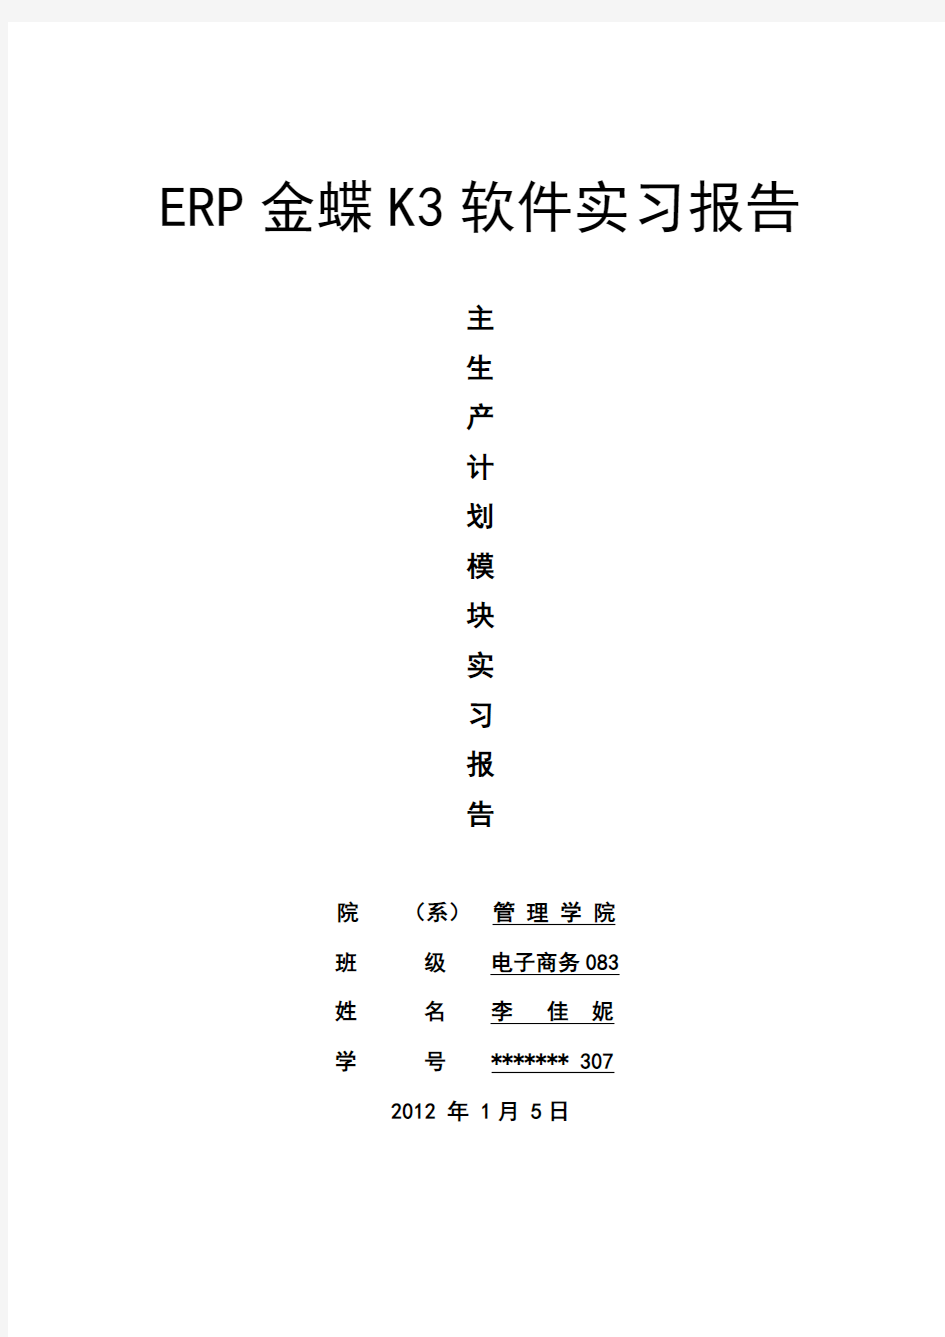 ERP金蝶K3实习报告截图及心得